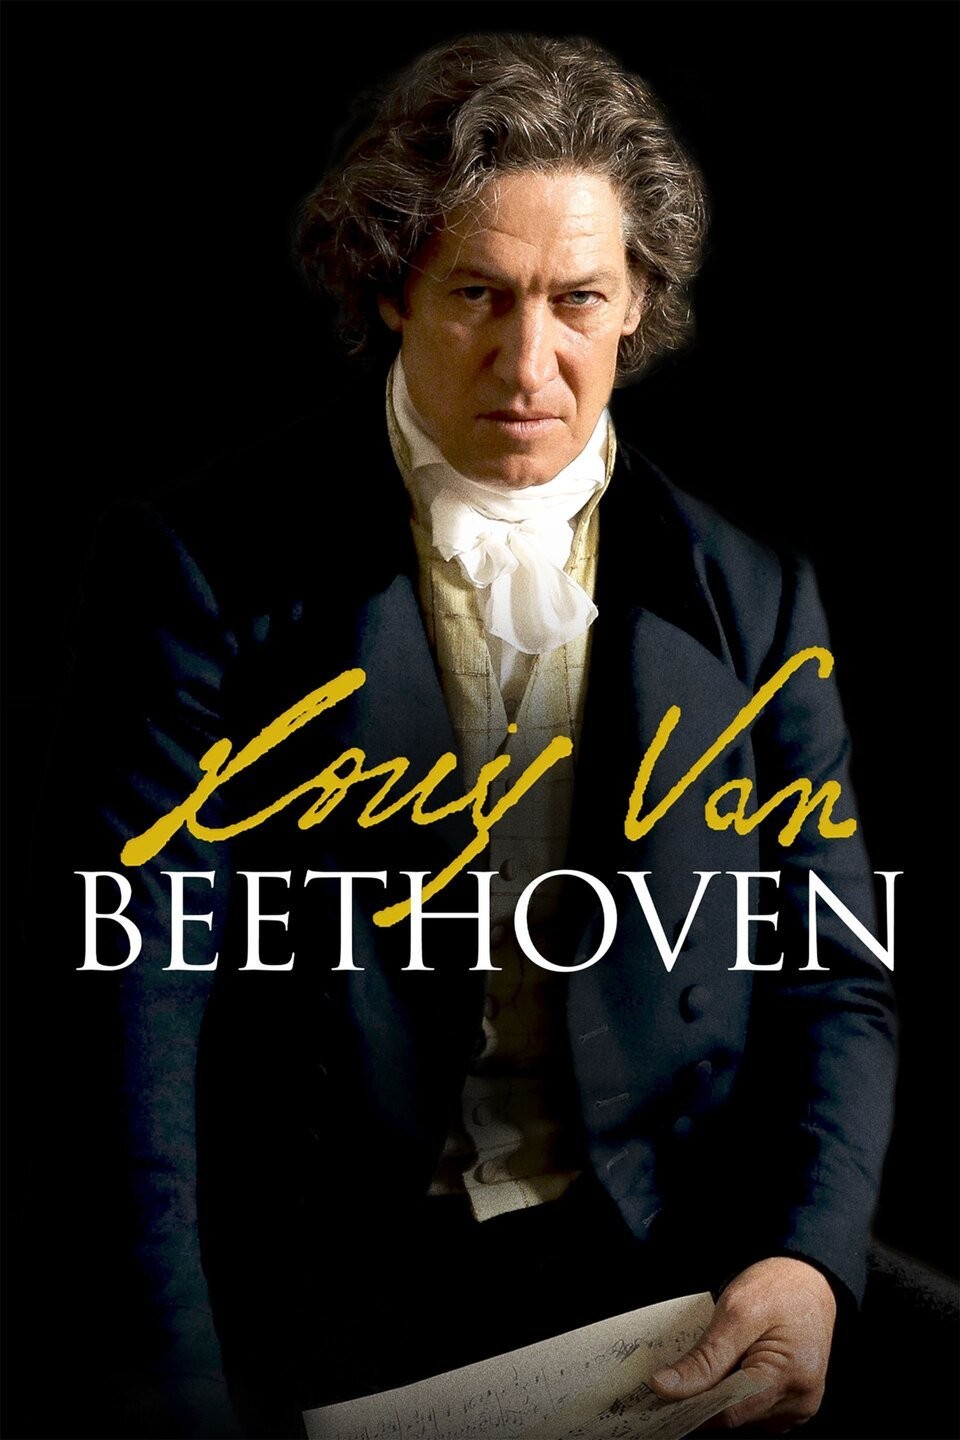 Louis Van Beethoven 2020 Rotten Tomatoes